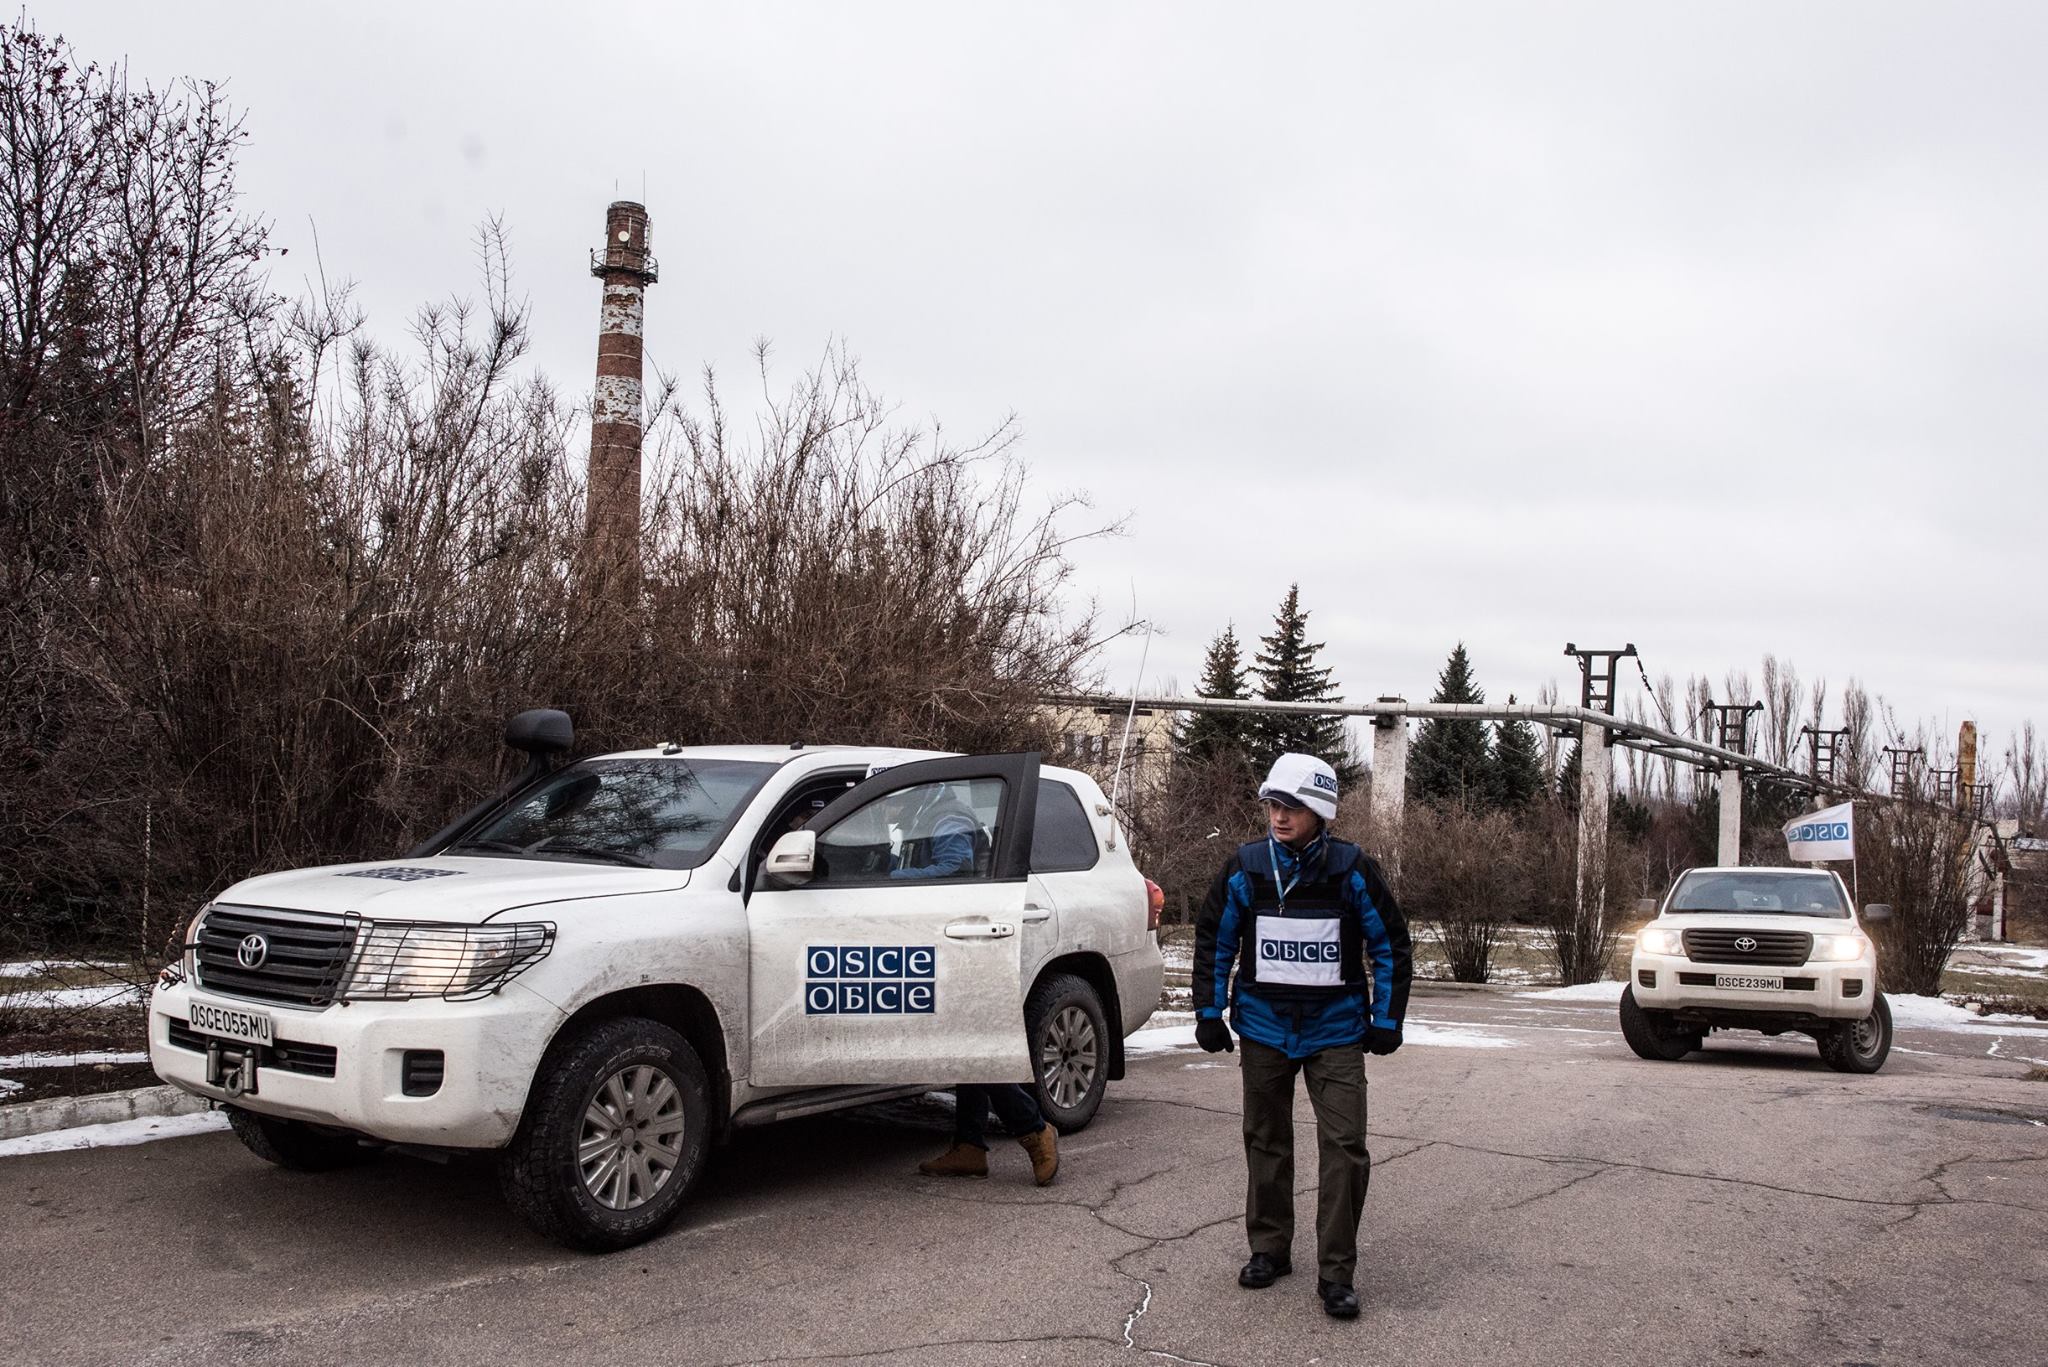 Патруль місії ОБСЄ в Україні пошкоджено у результаті вибуху, є загиблі